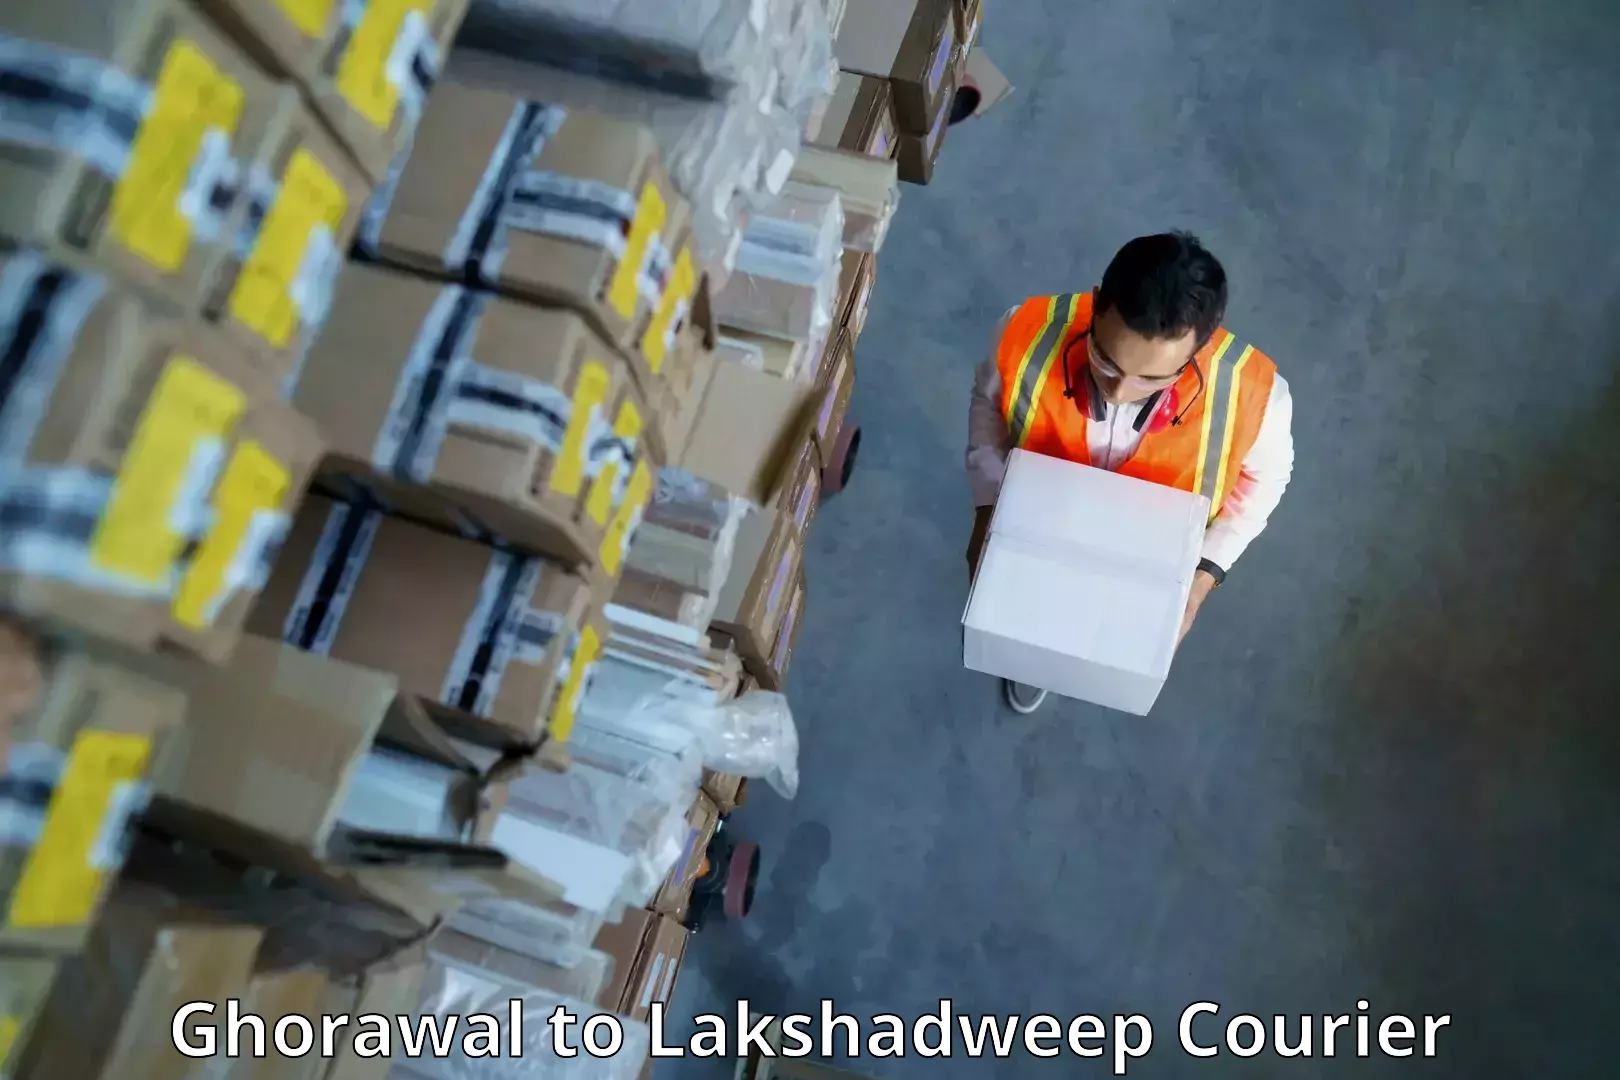 Nationwide delivery network Ghorawal to Lakshadweep